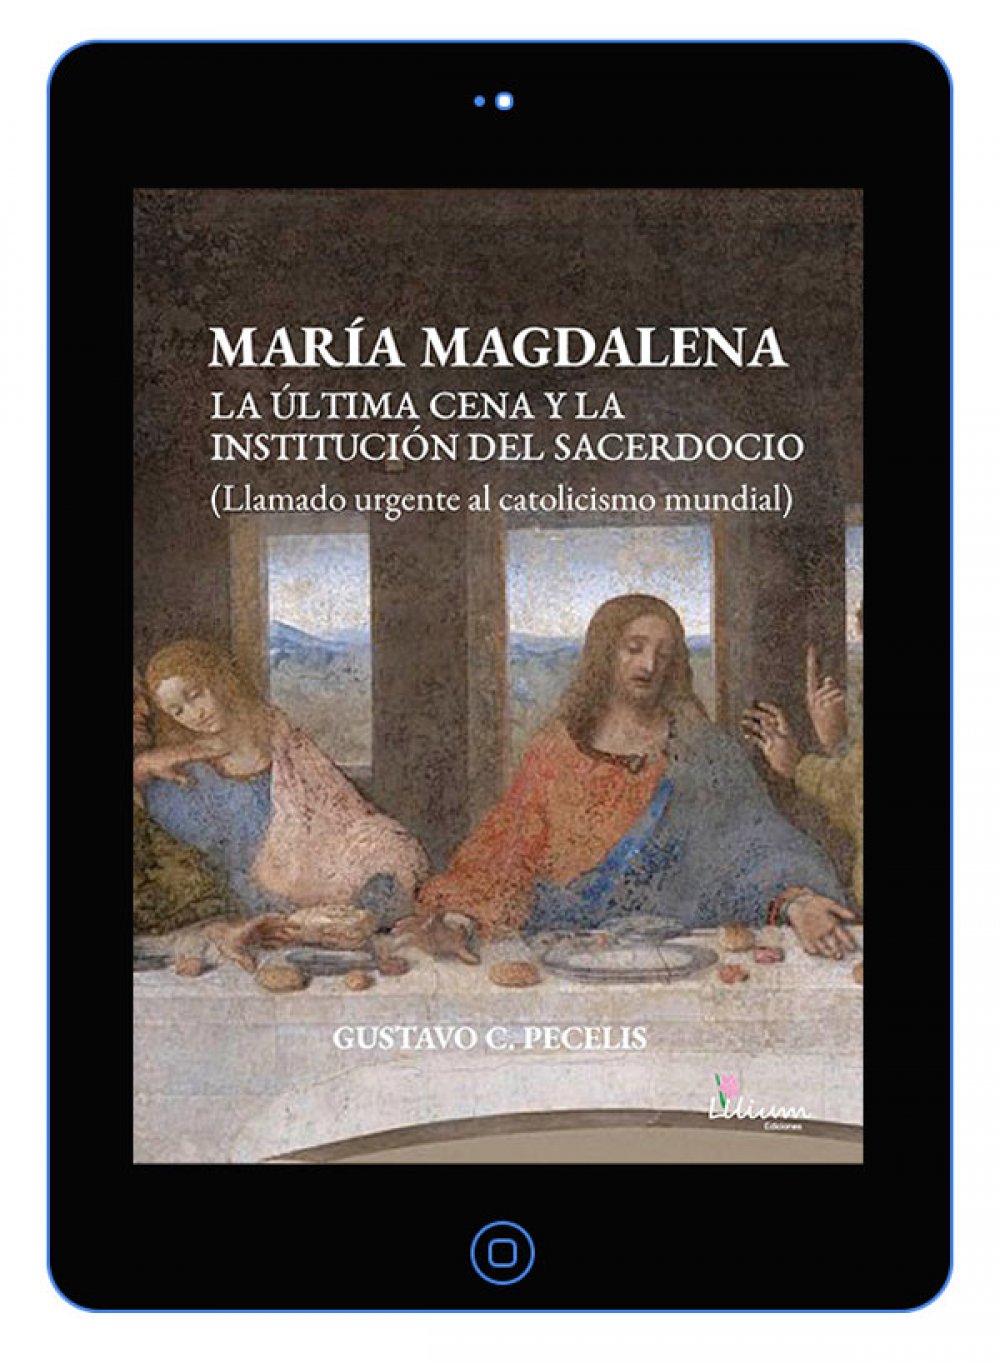 María Magdalena en la Última Cena y la institución del sacerdocio : llamado urgente al catolicismo mundial